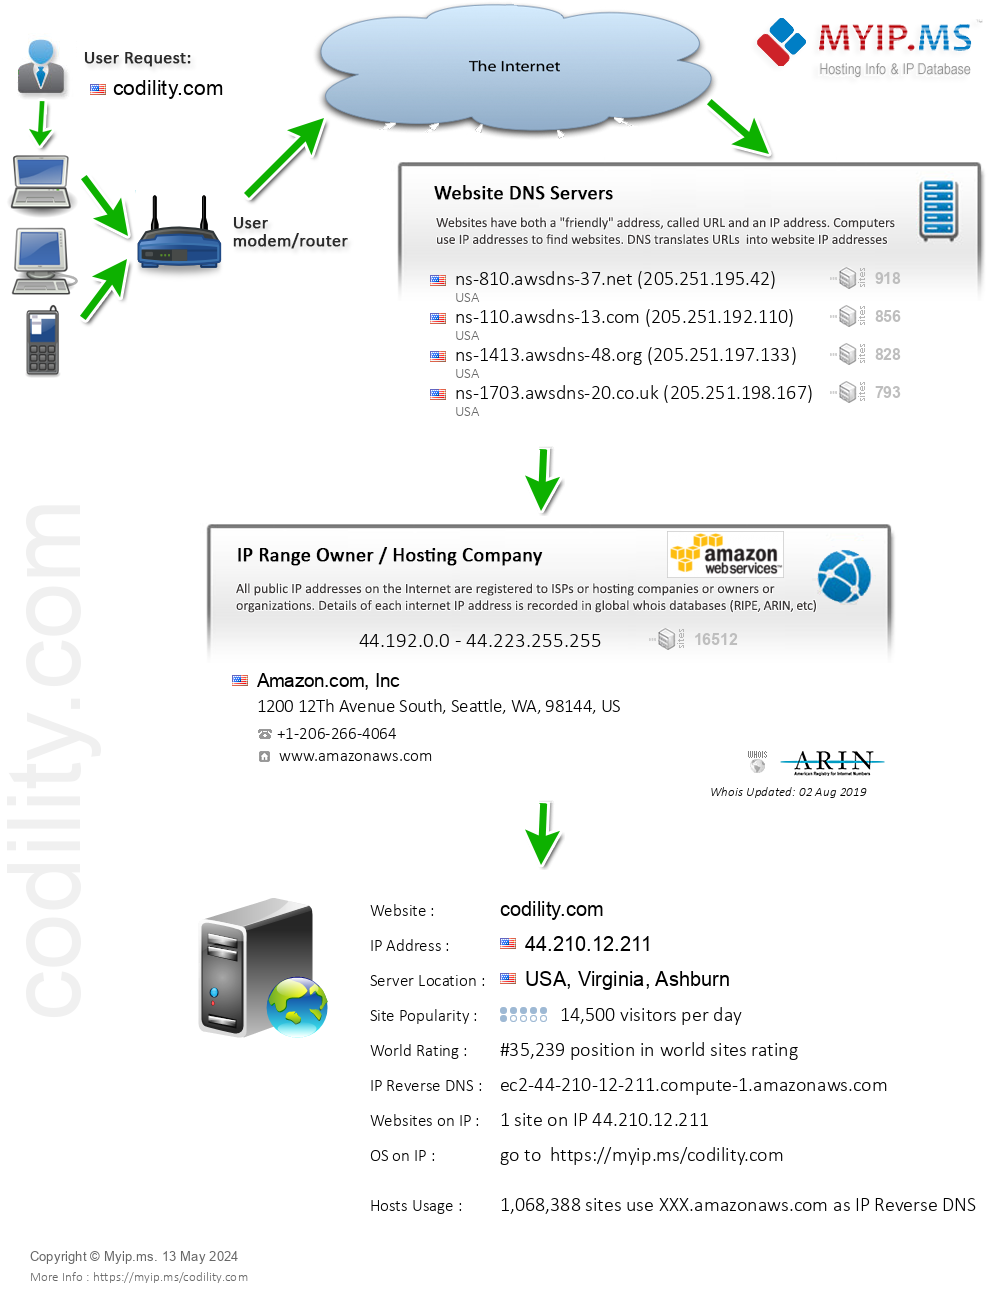 Codility.com - Website Hosting Visual IP Diagram